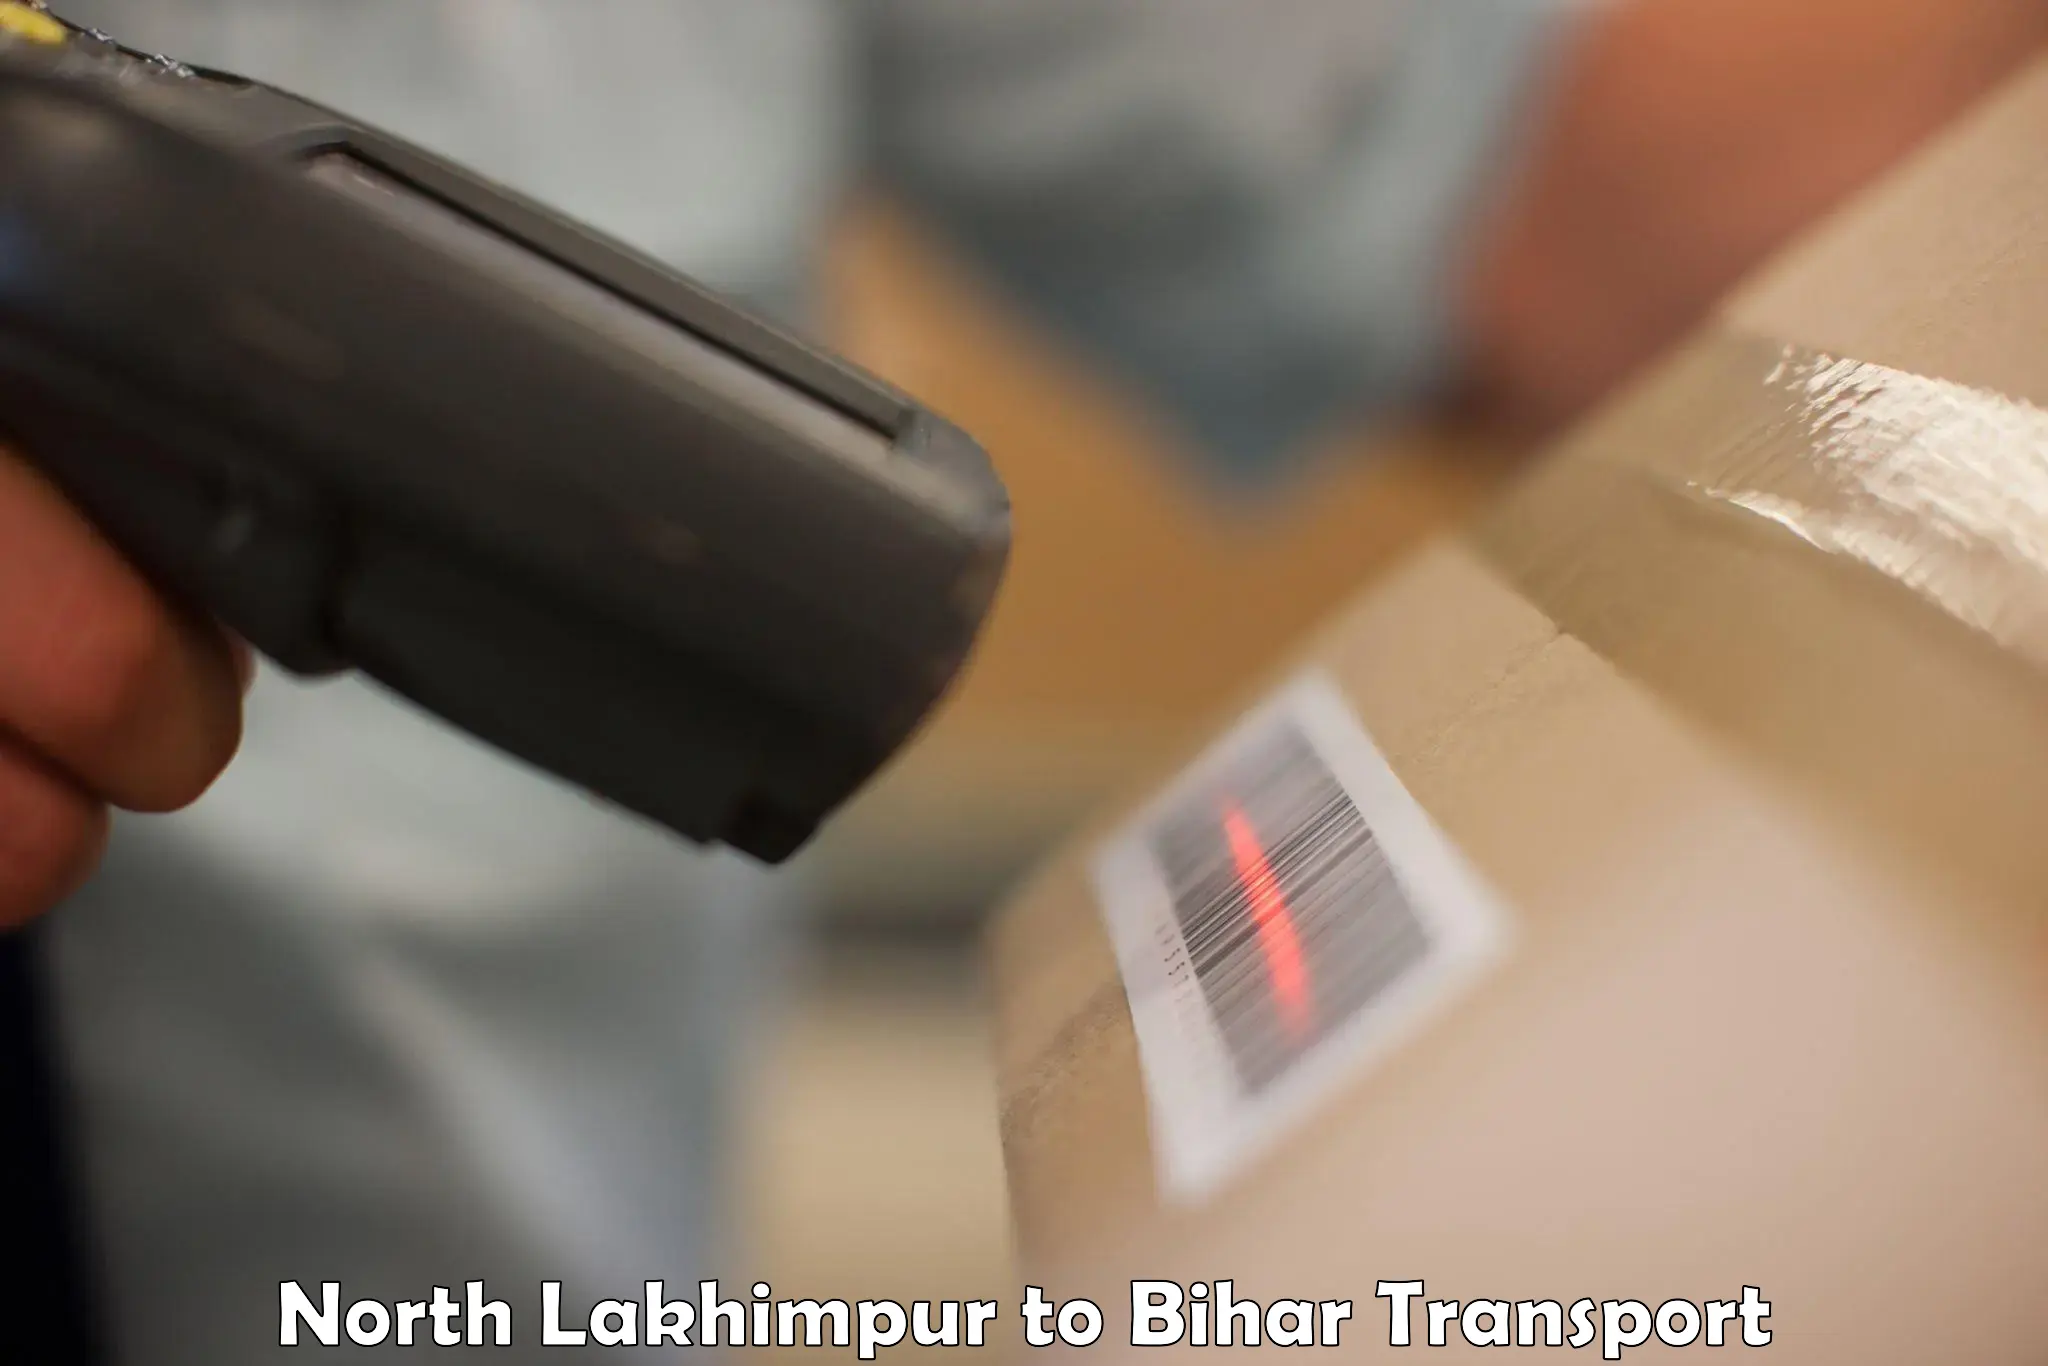 Furniture transport service North Lakhimpur to Jaynagar